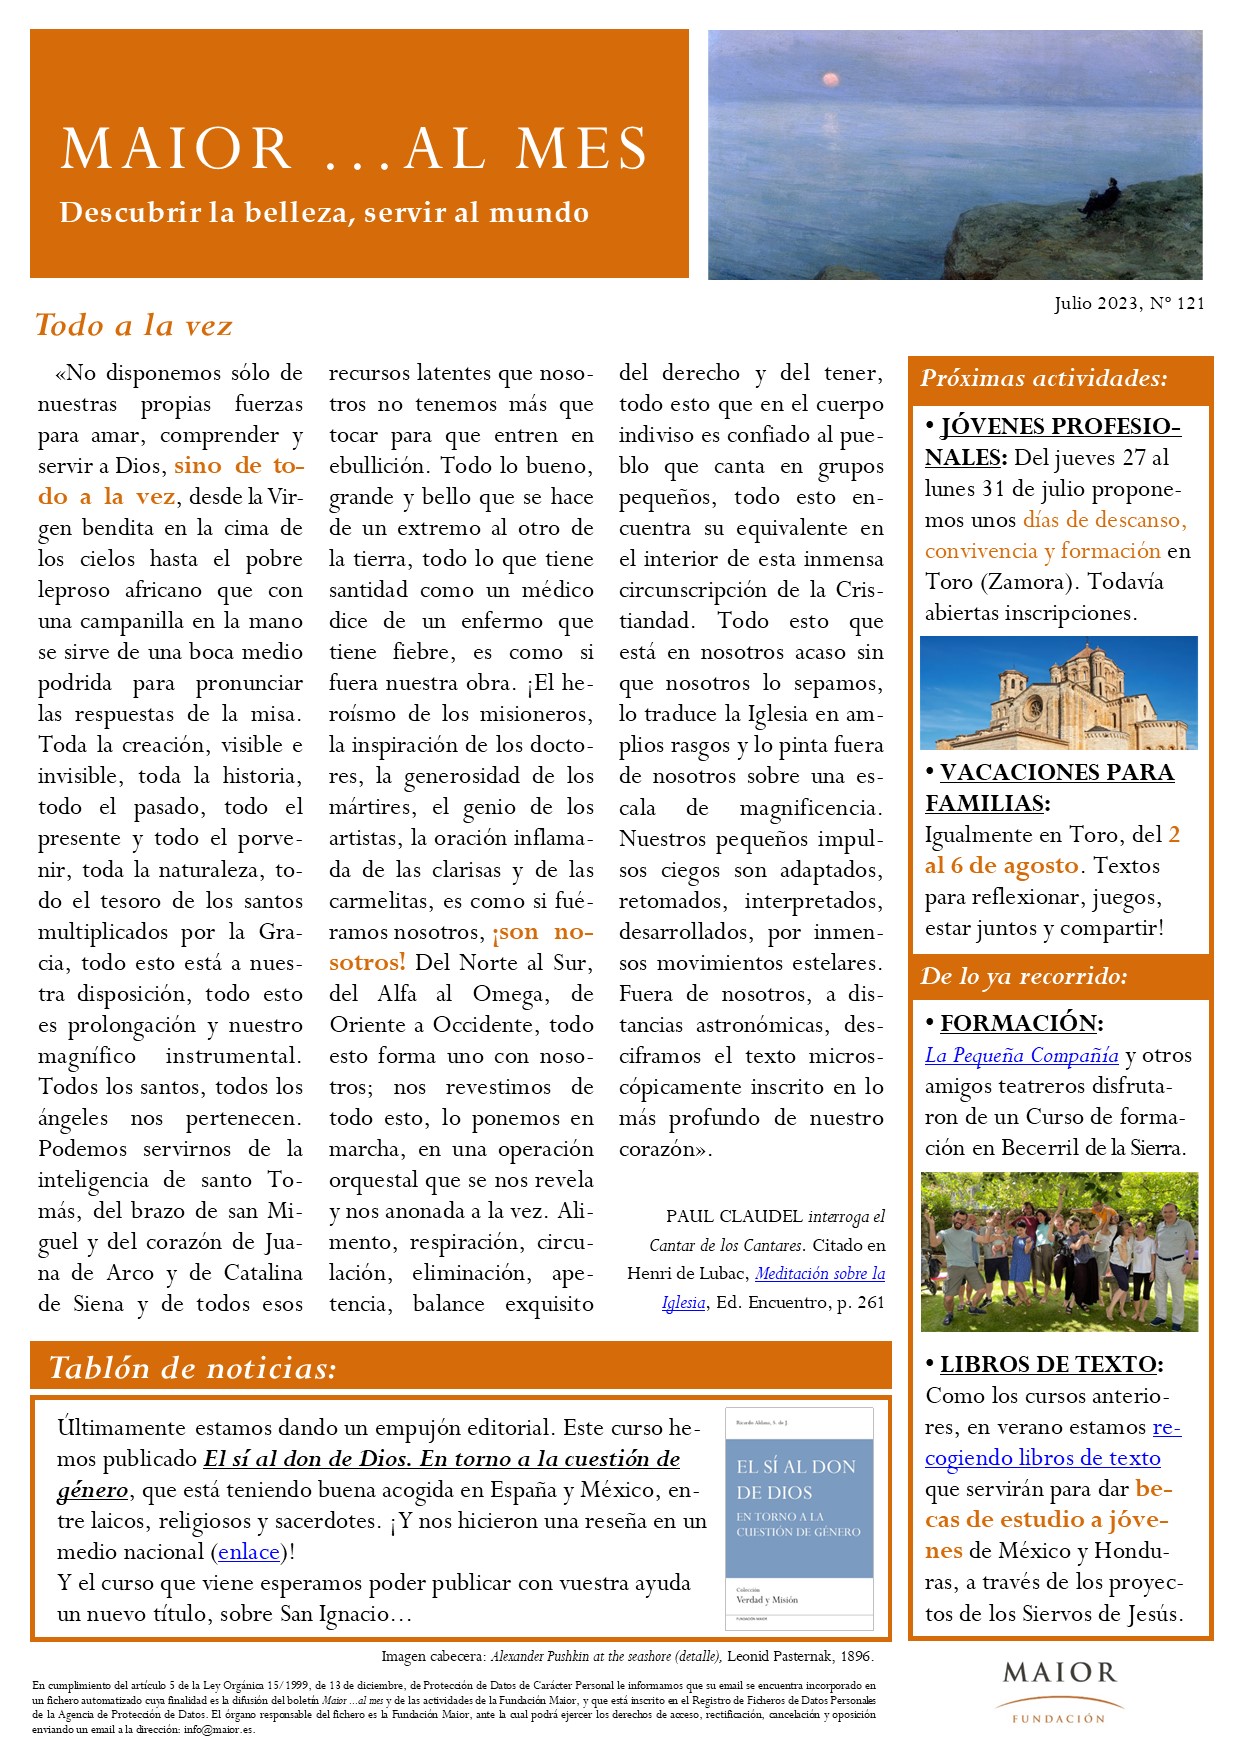 Boletín mensual de noticias y actividades de la Fundación Maior. Edición de julio 2023